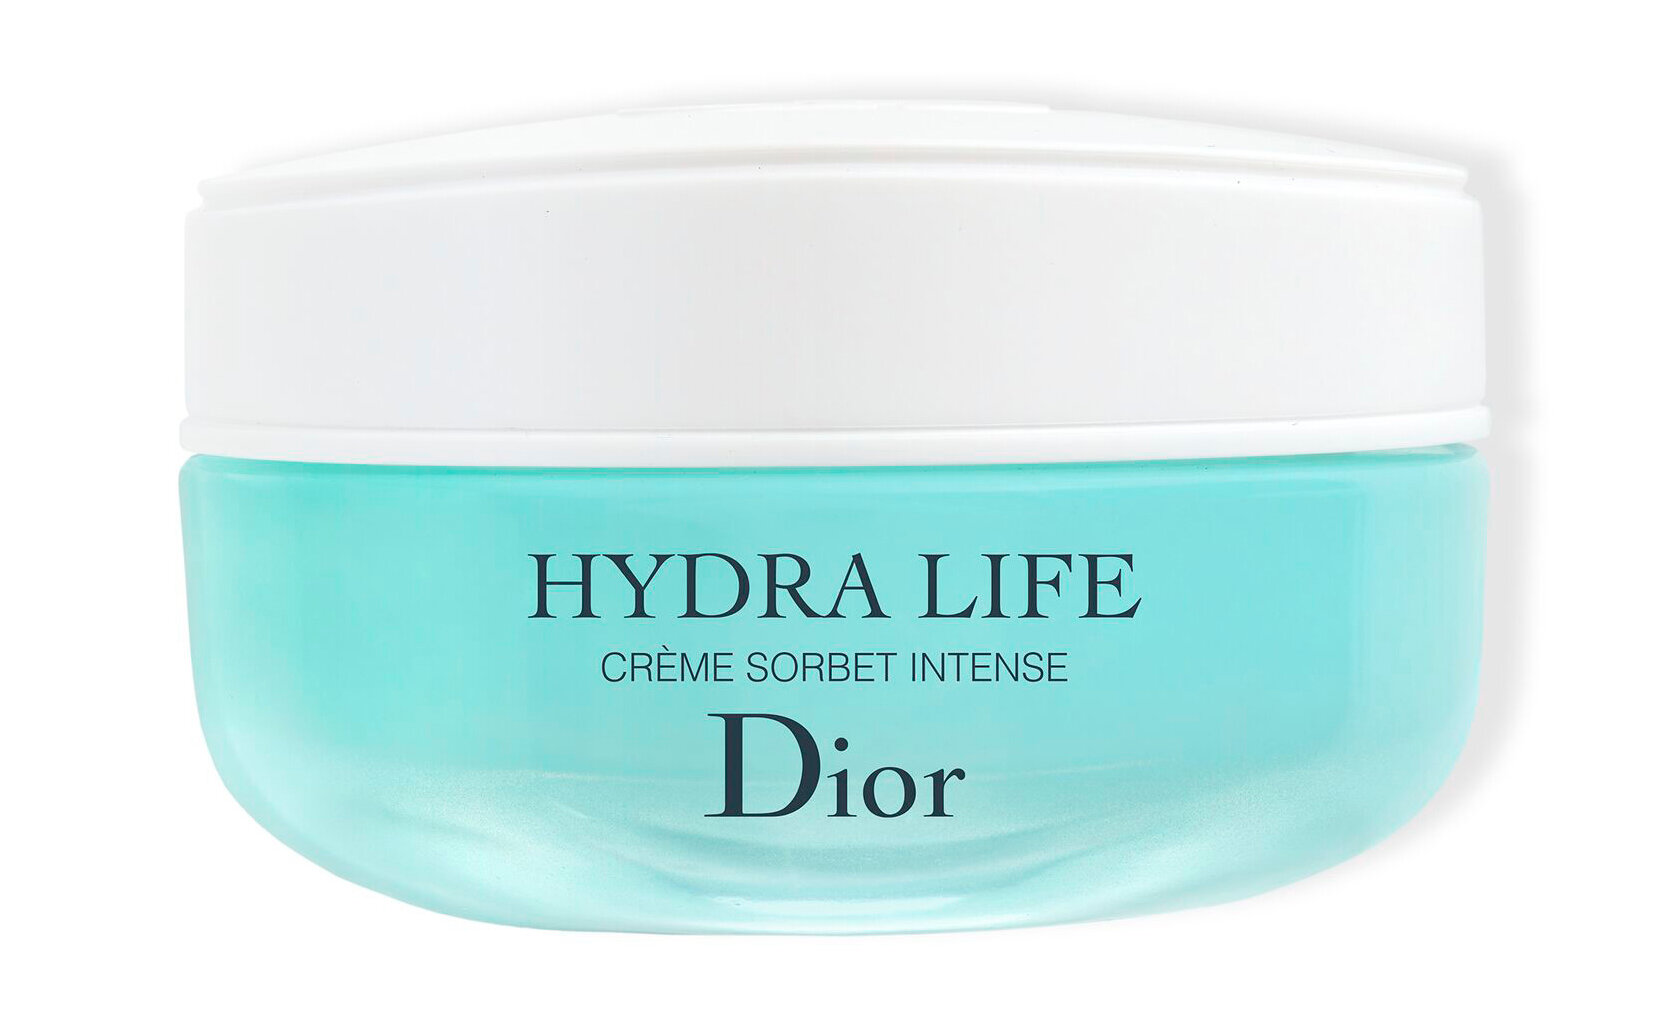 Dior Hydra Life Hydration Rescue Intense Sorbet Creme Интенсивный крем-сорбе спасение для сухой кожи лица, 50 мл